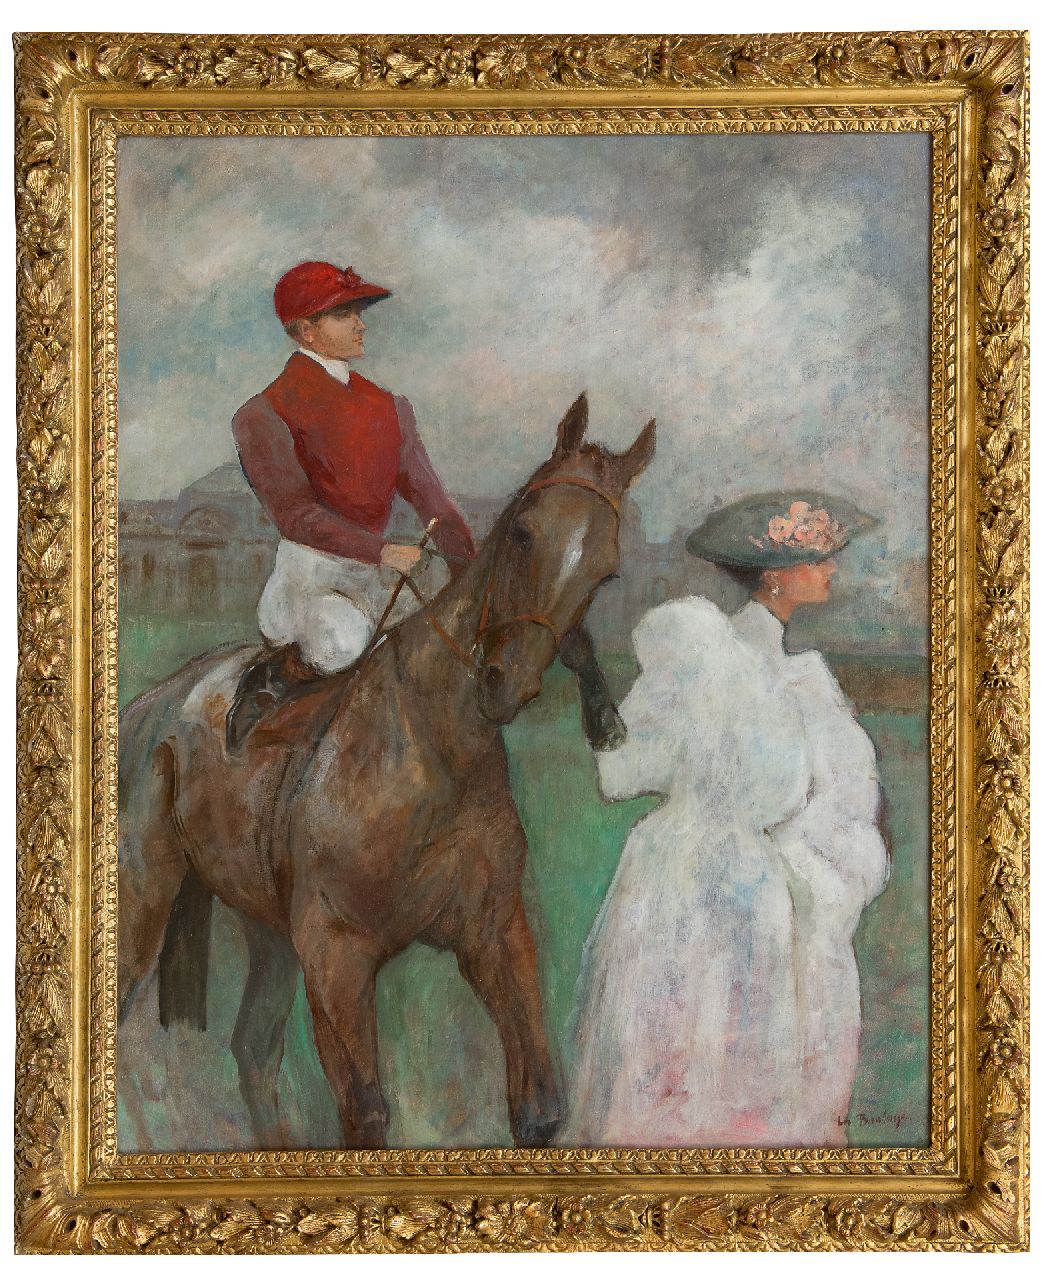 Boulaye A. de La | Antoine de La Boulaye | Schilderijen te koop aangeboden | Na de race, olieverf op doek 100,0 x 80,0 cm, gesigneerd rechtsonder